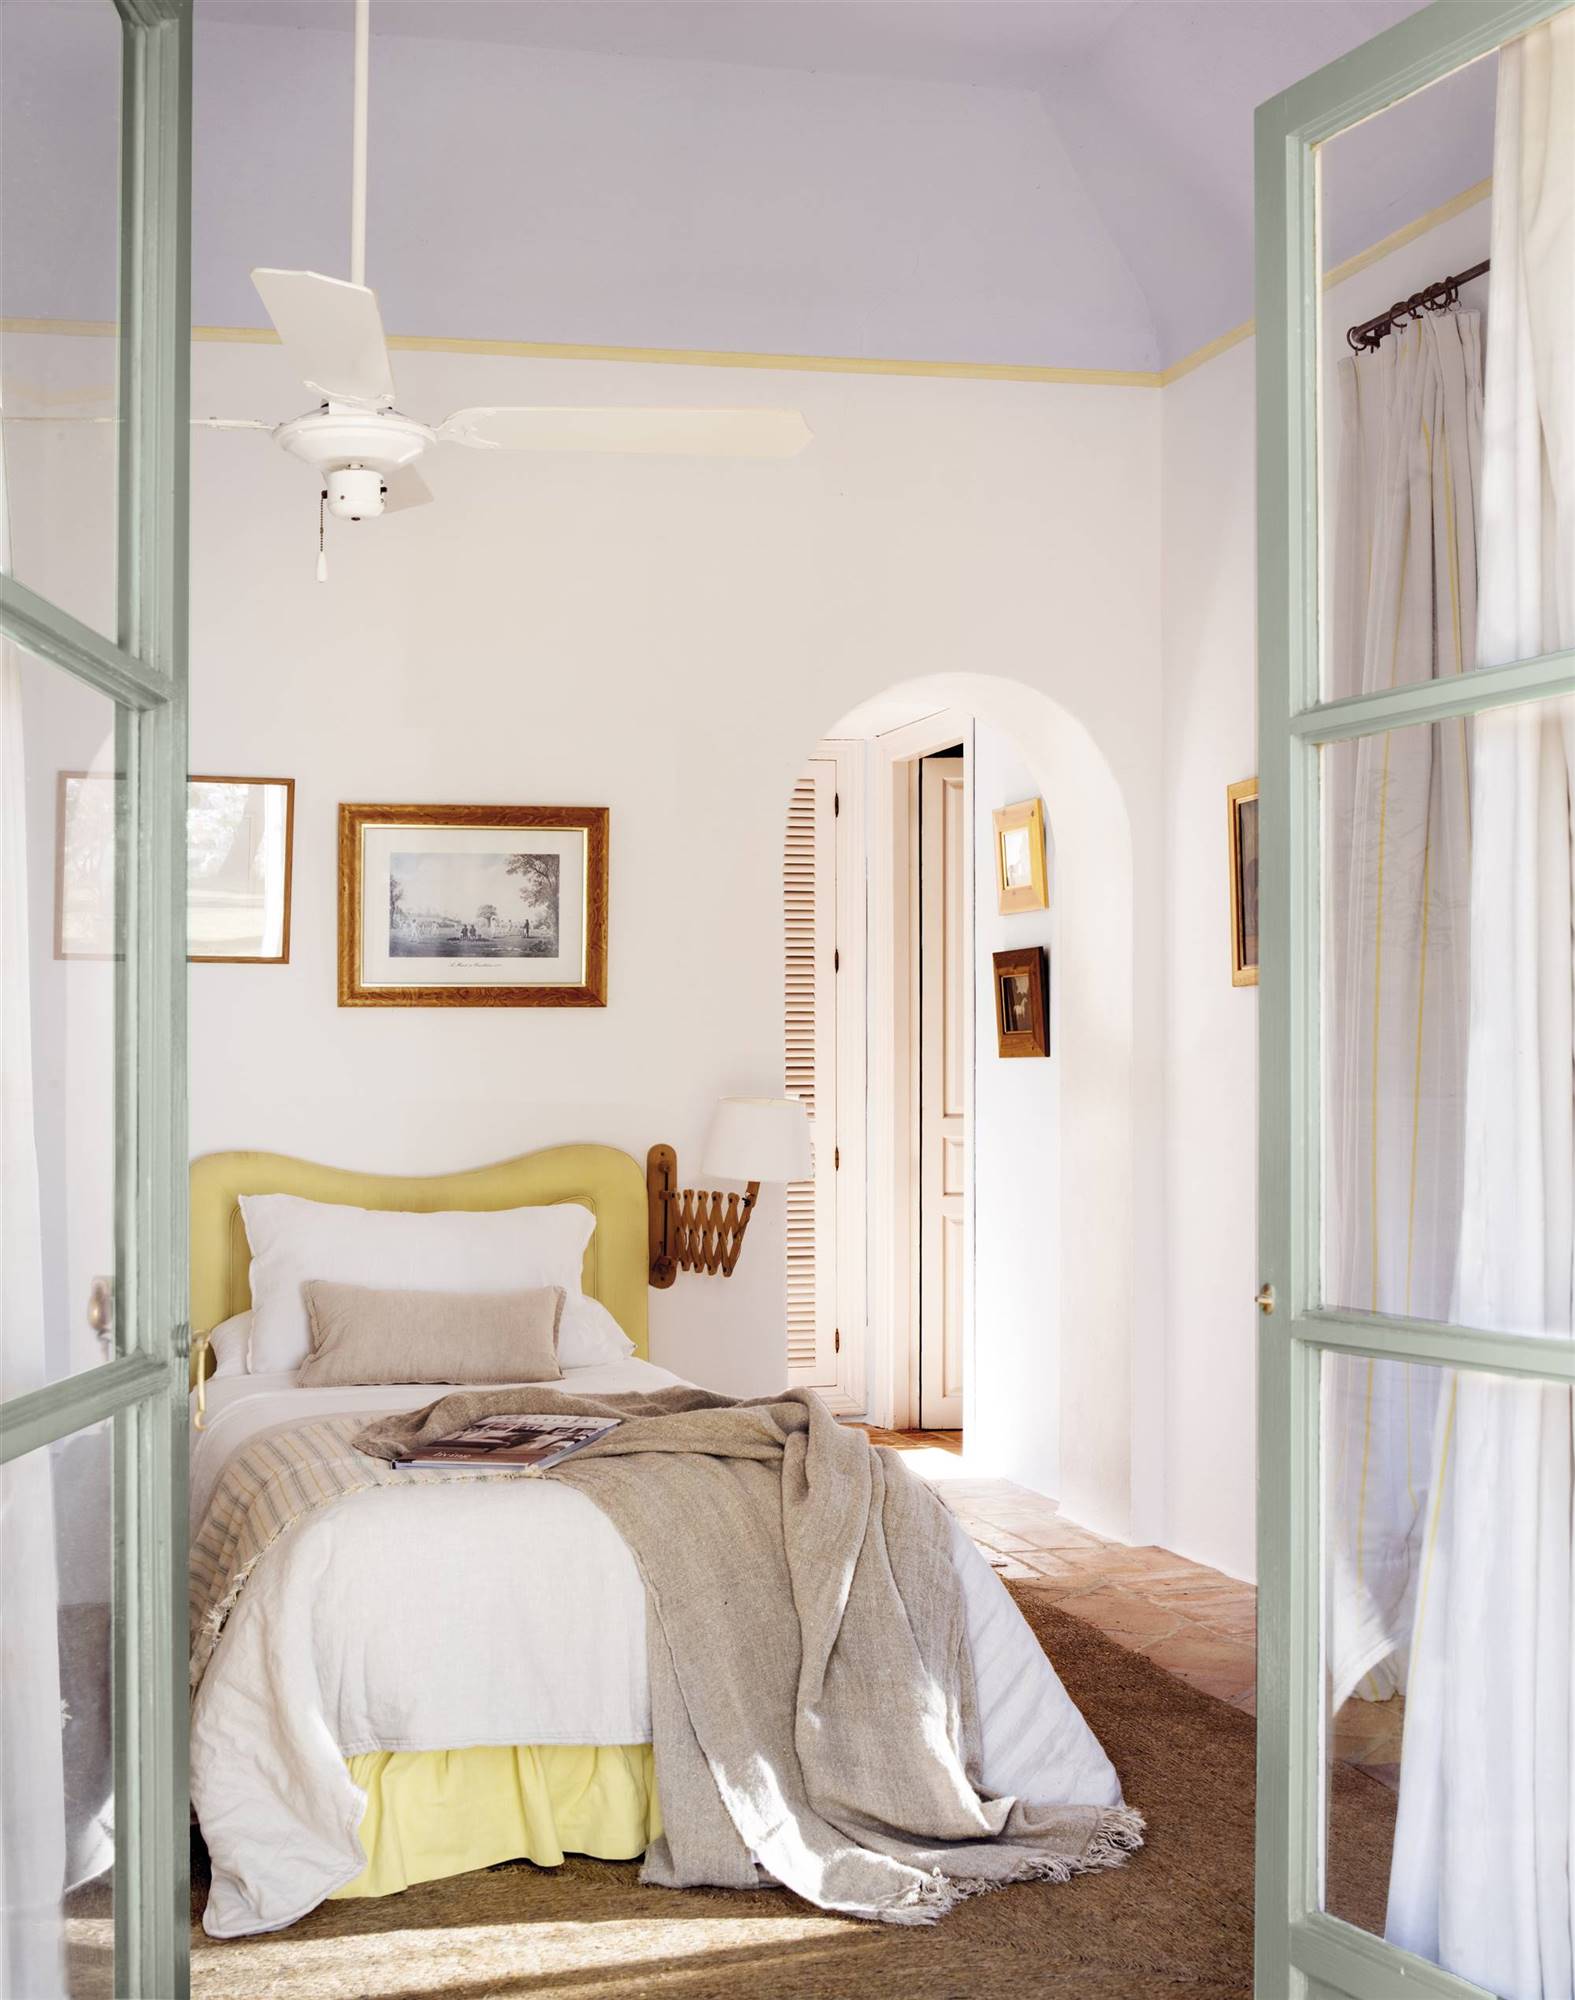 Dormitorio juvenil en blanco con cabecero en amarillo suave. 